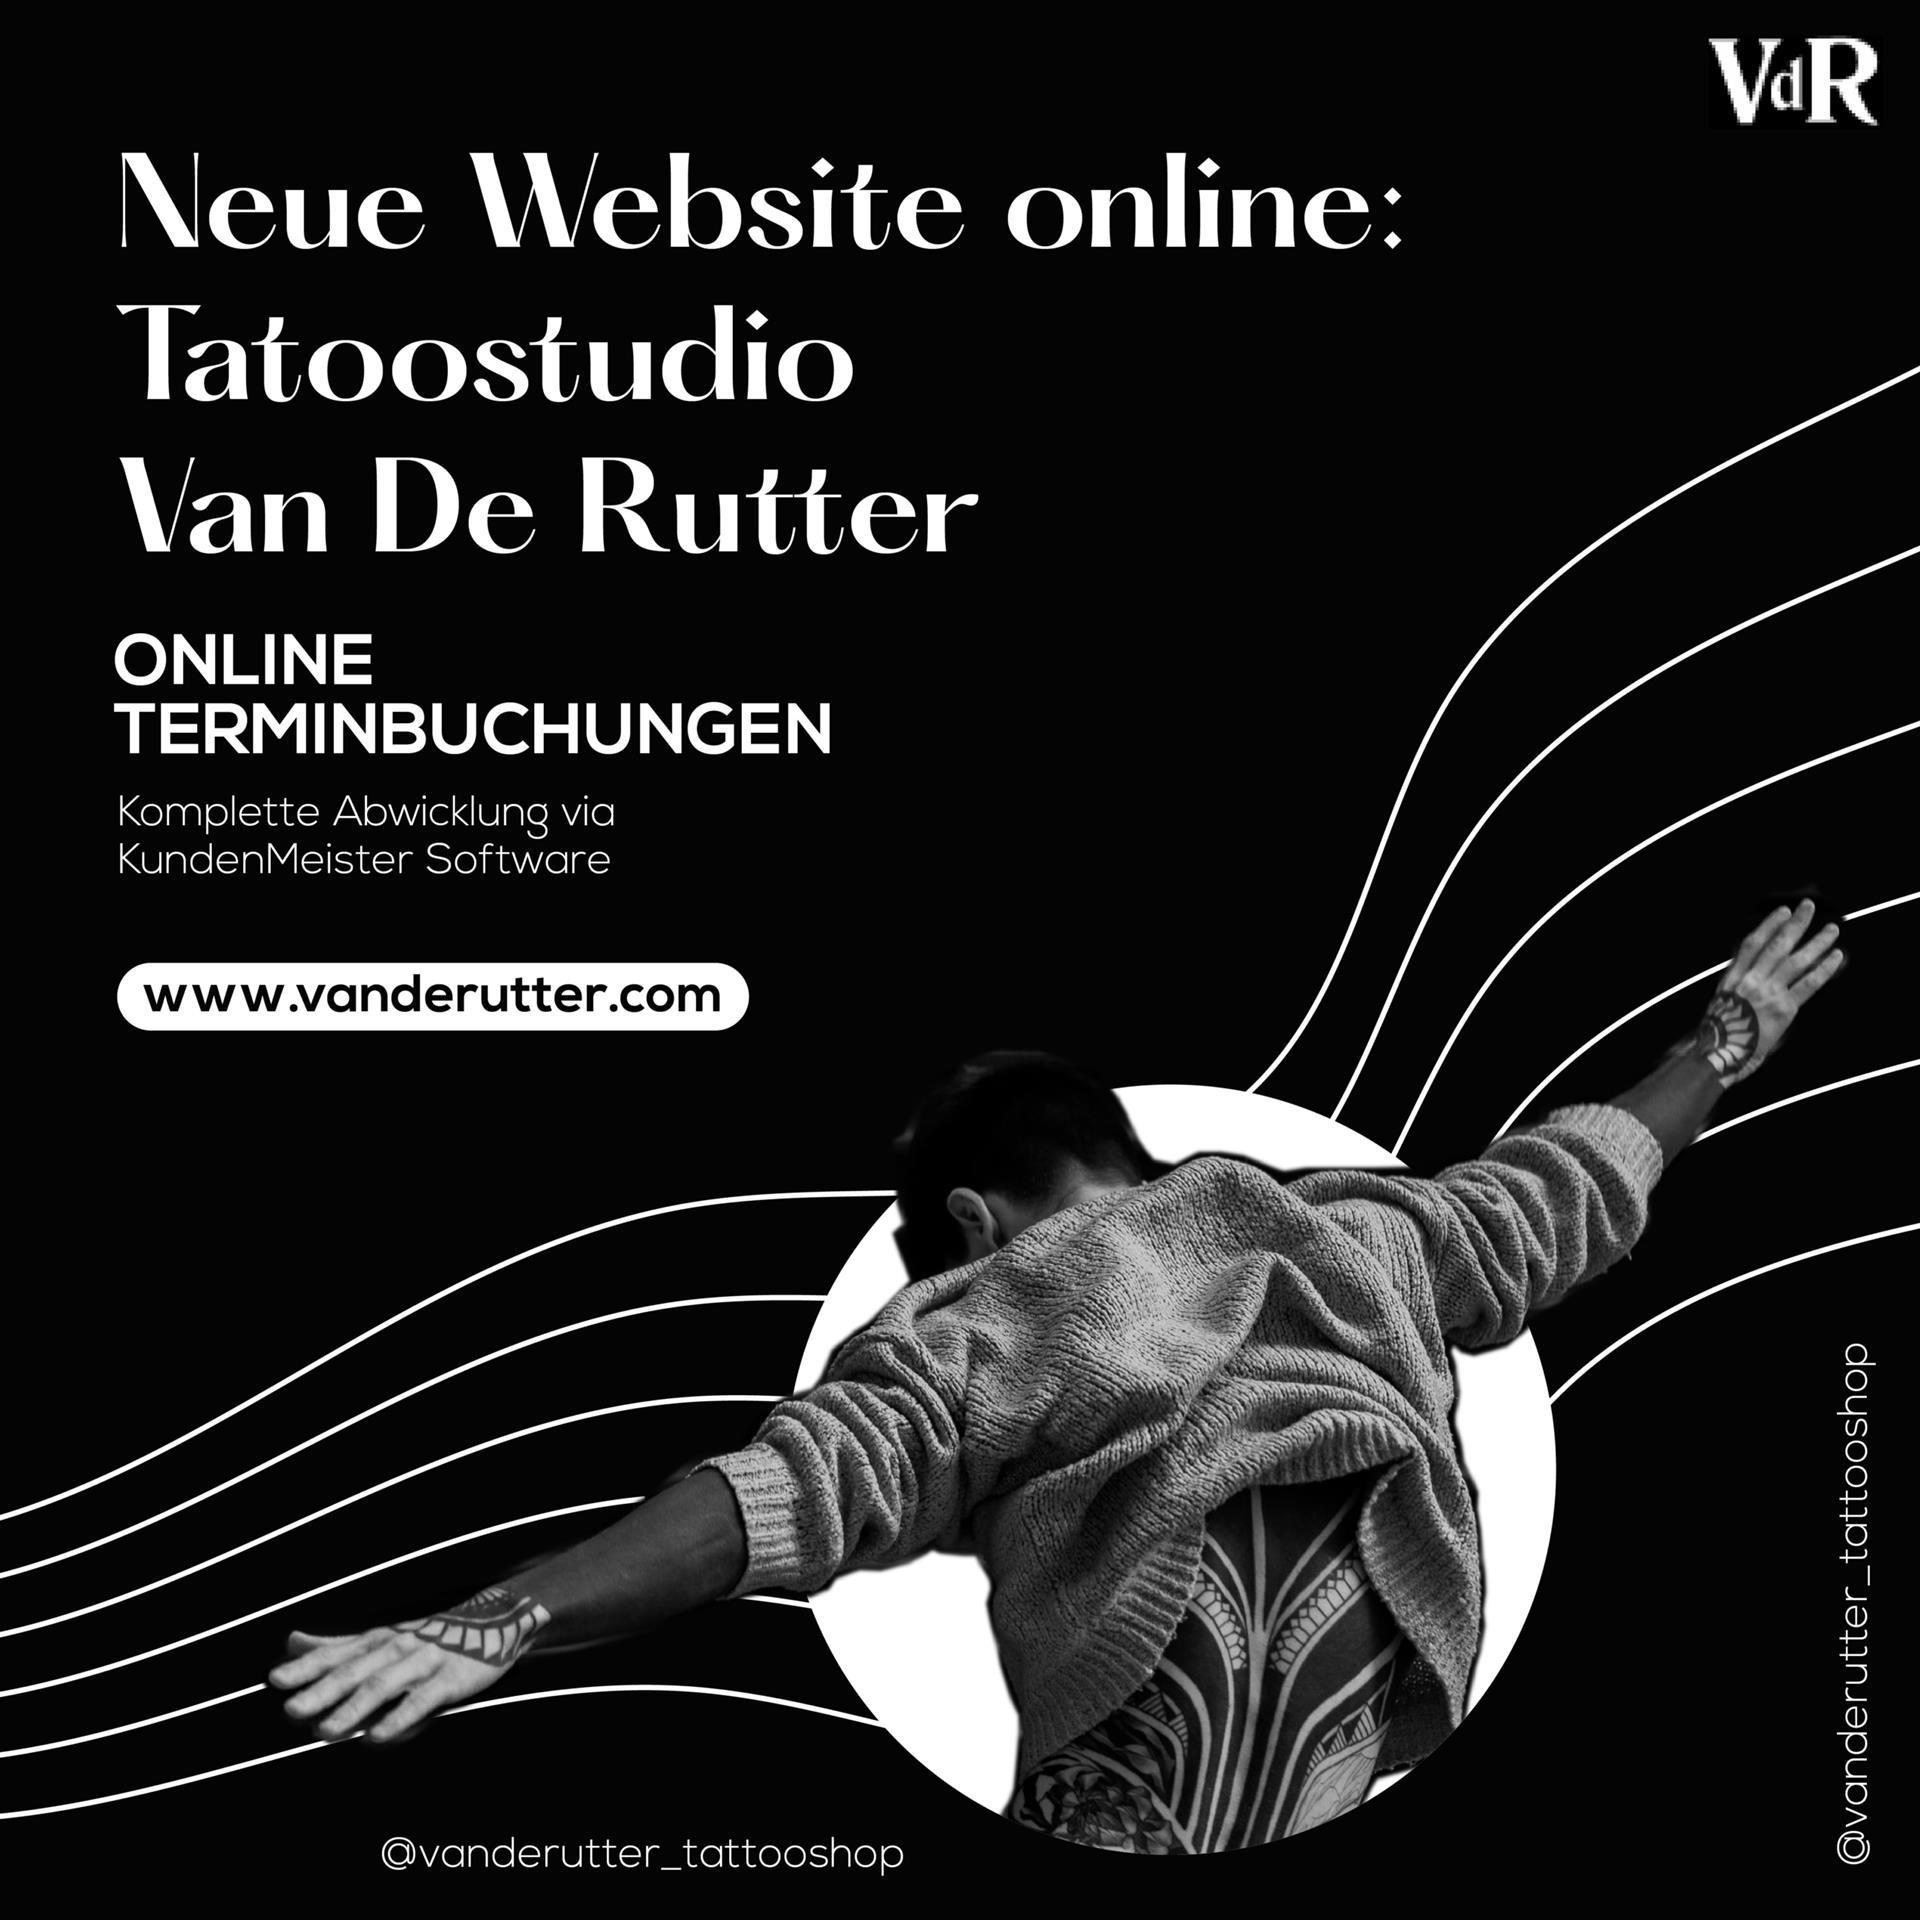 Van de Rutter için yeni web sitesi